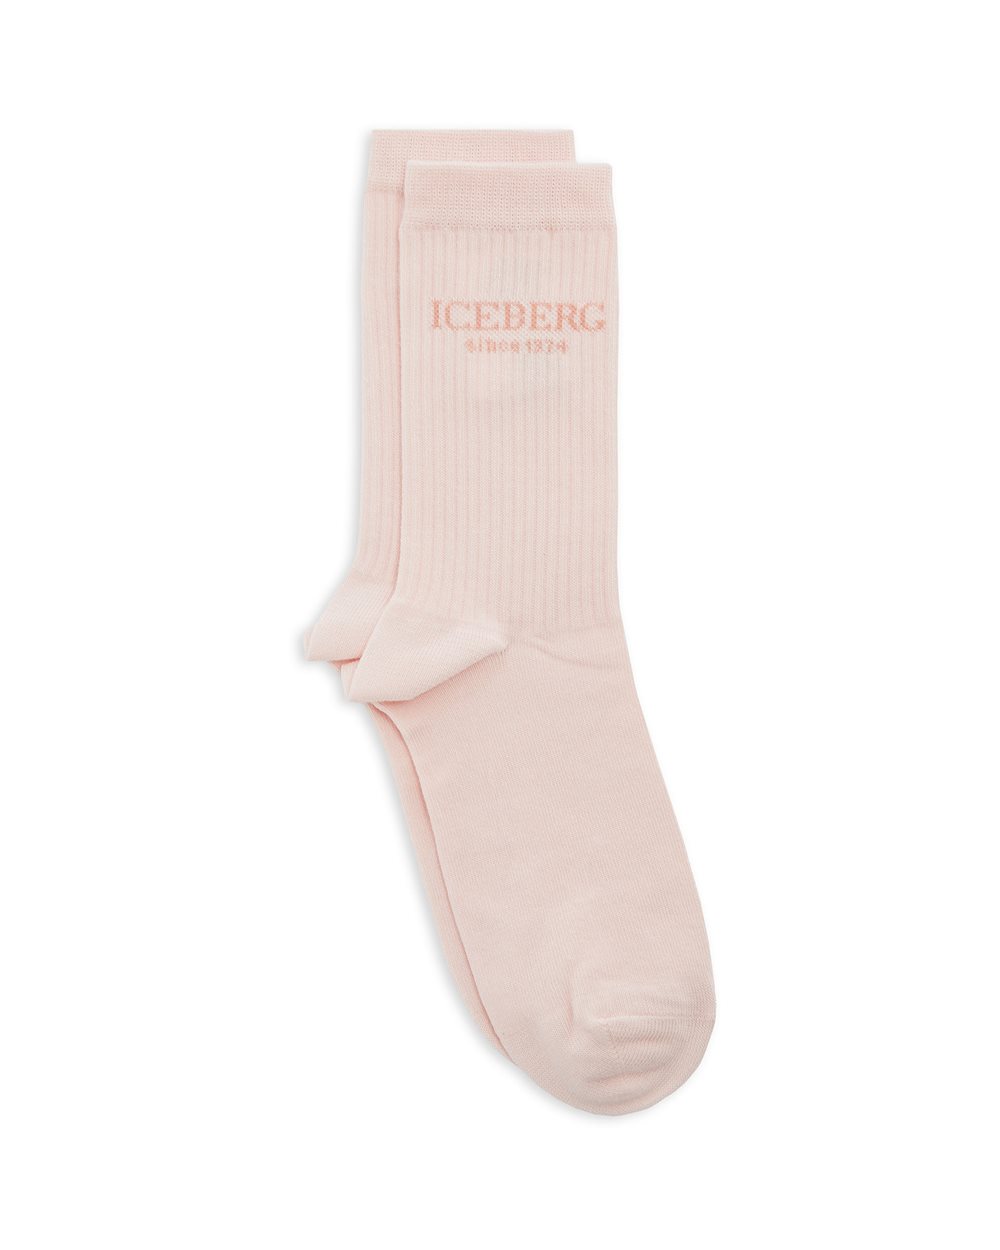 Socks with logo - socks | Iceberg - Official Website